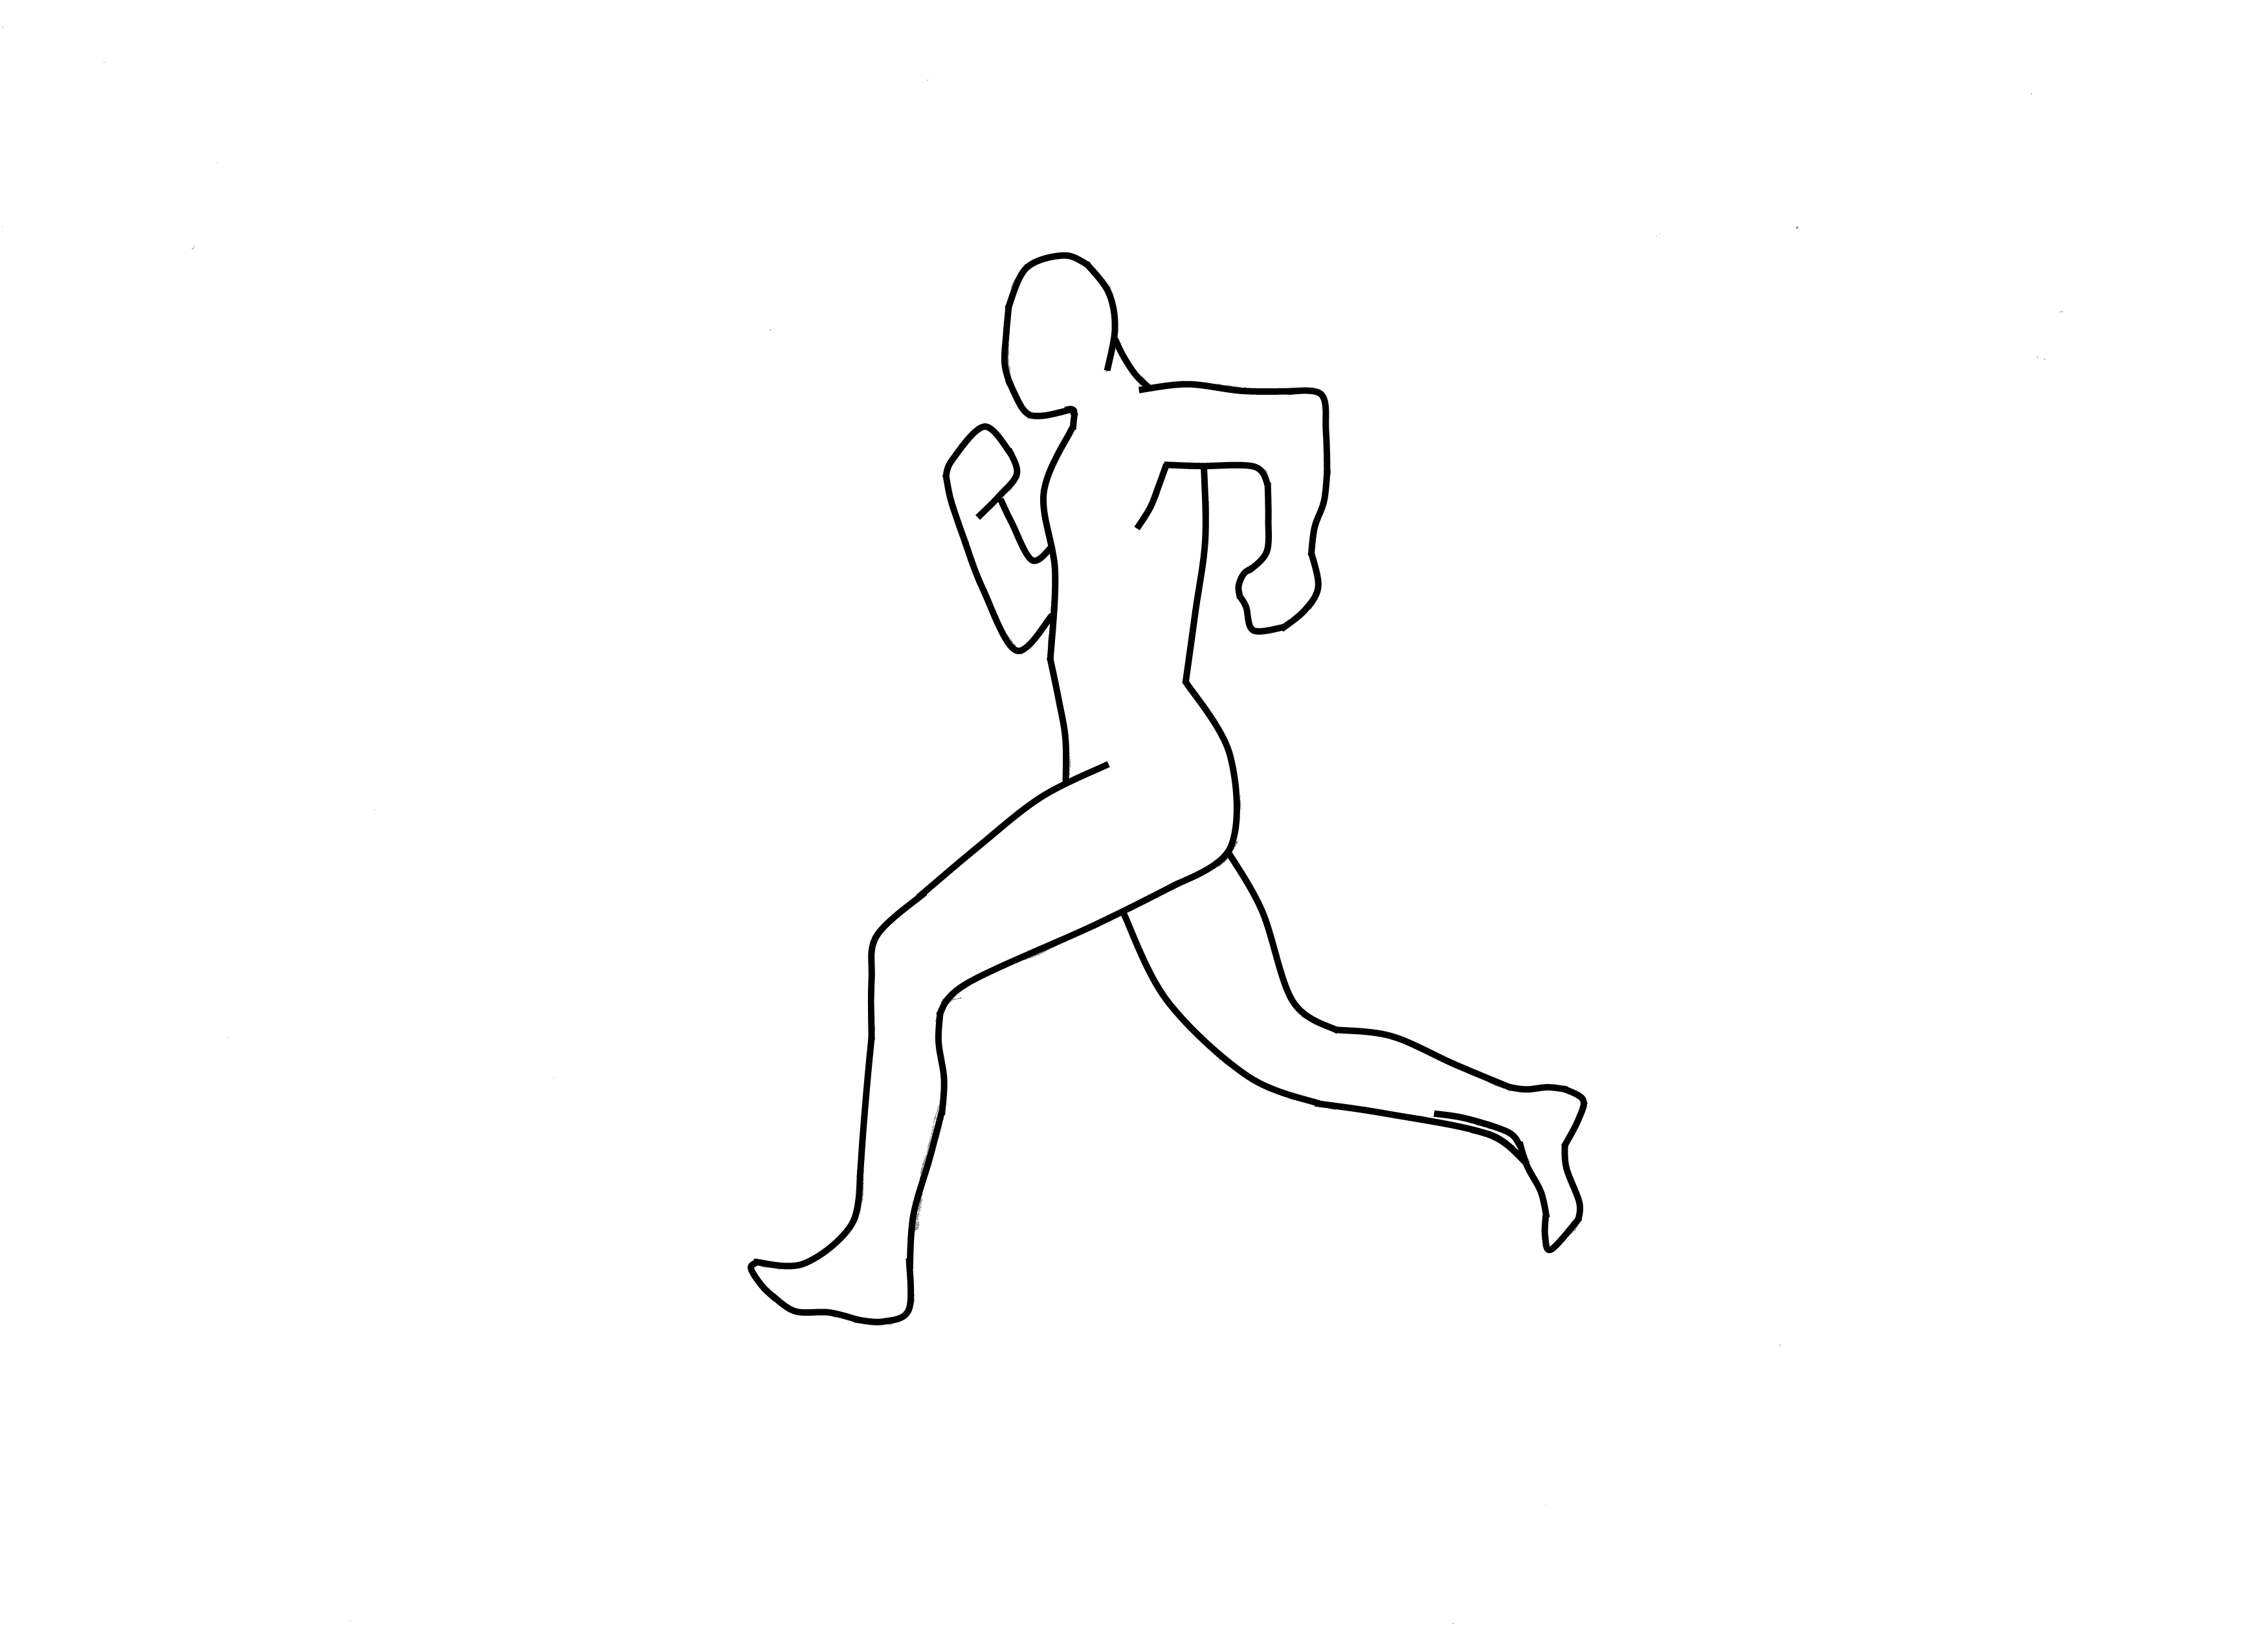 Animation templates. Силуэты людей в движении. Фигура бегущего человека. Трафарет человека в движении. Человек в движении шаблон.